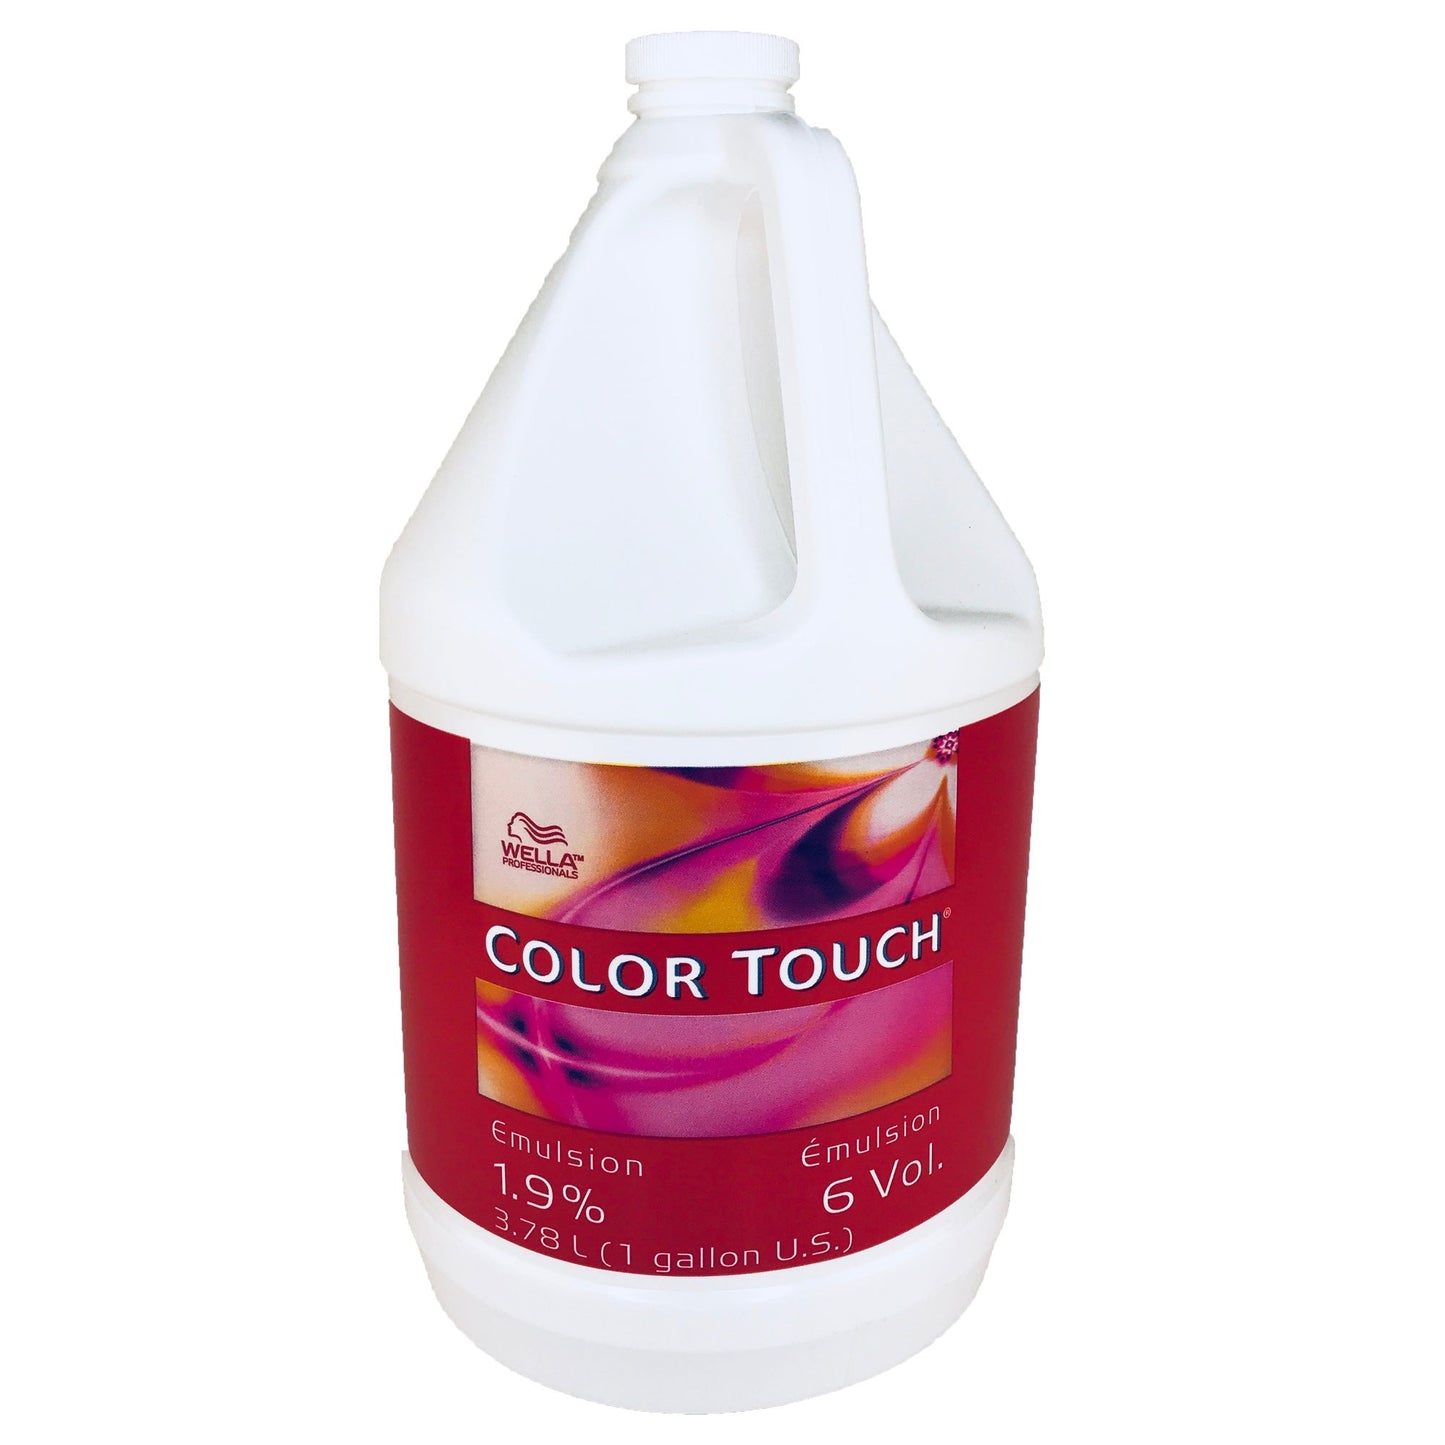 Color Touch Developer: 6 Vol